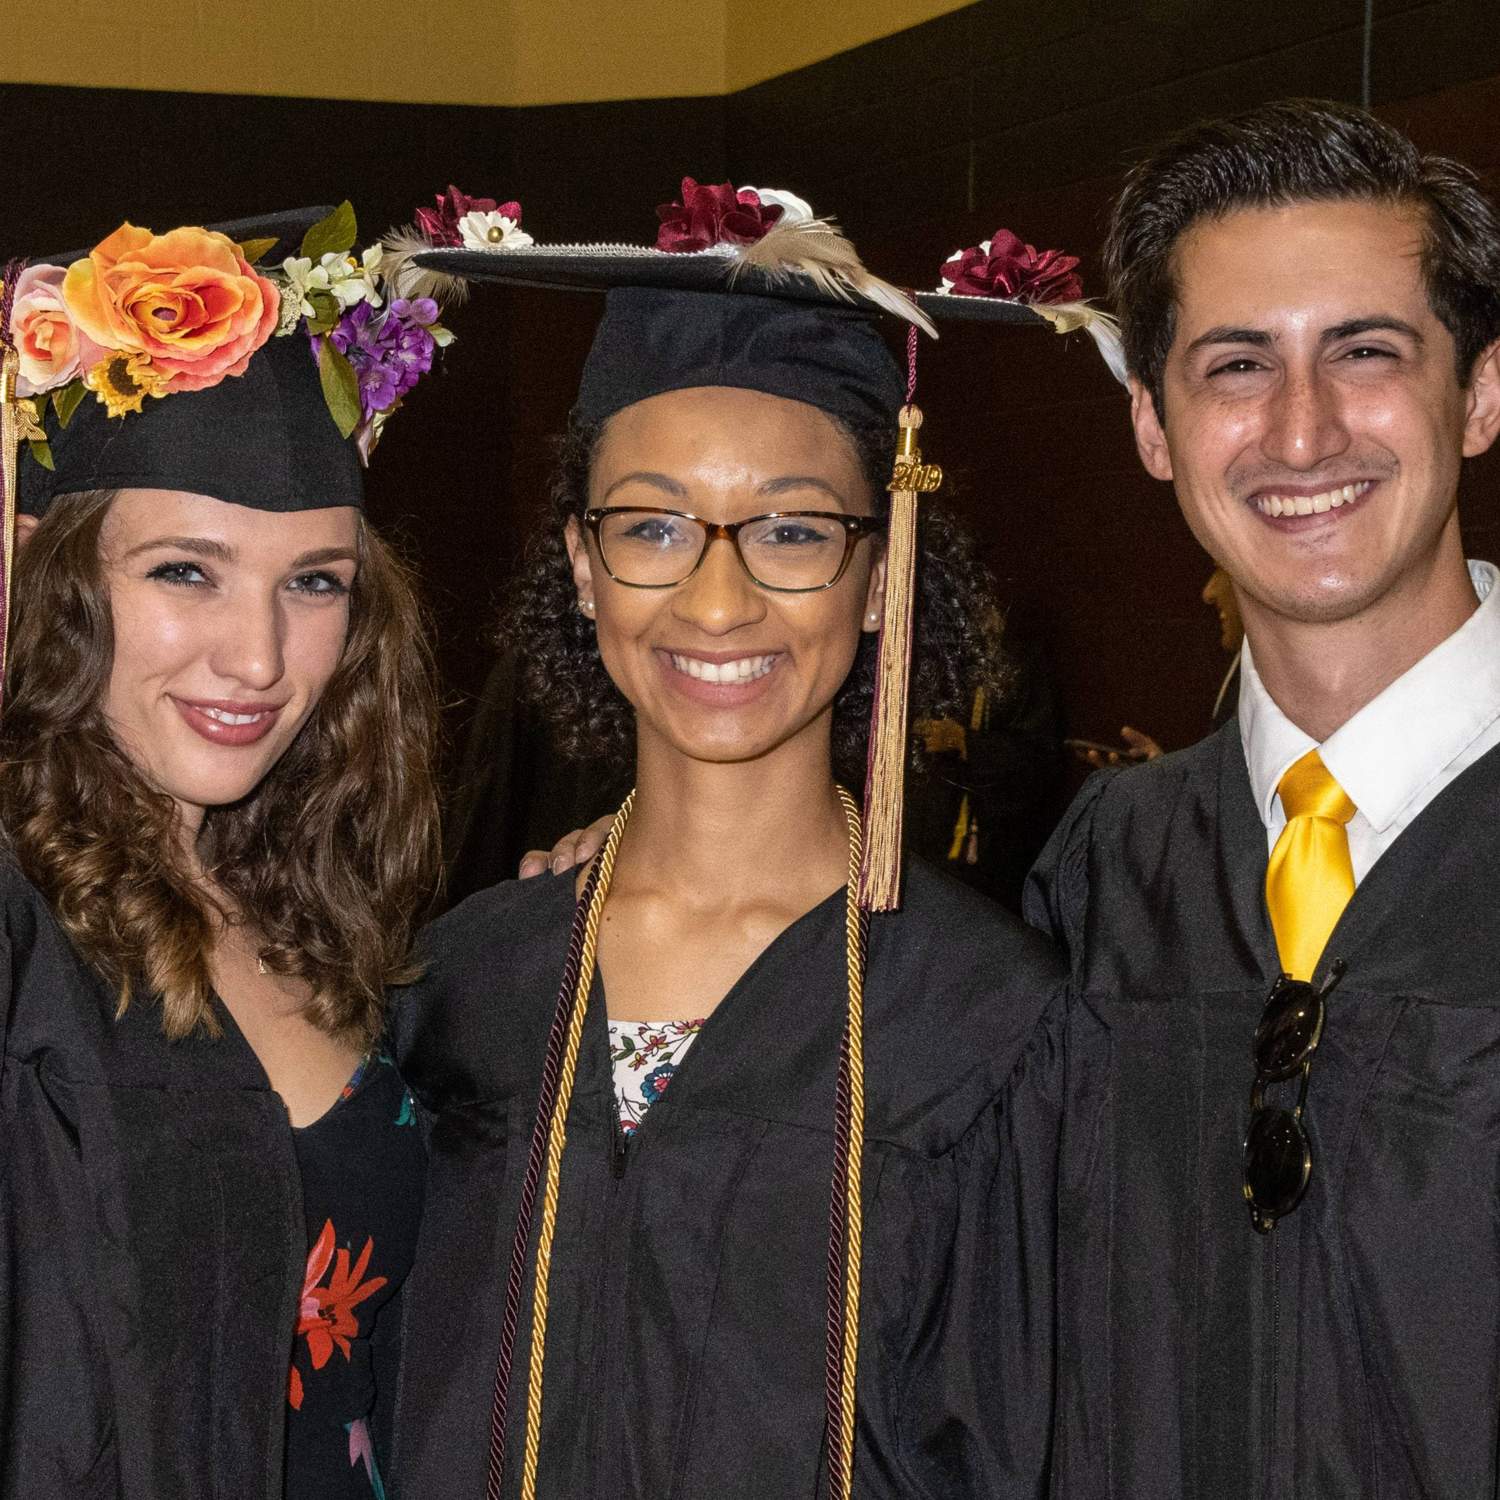 Three graduates smiling 